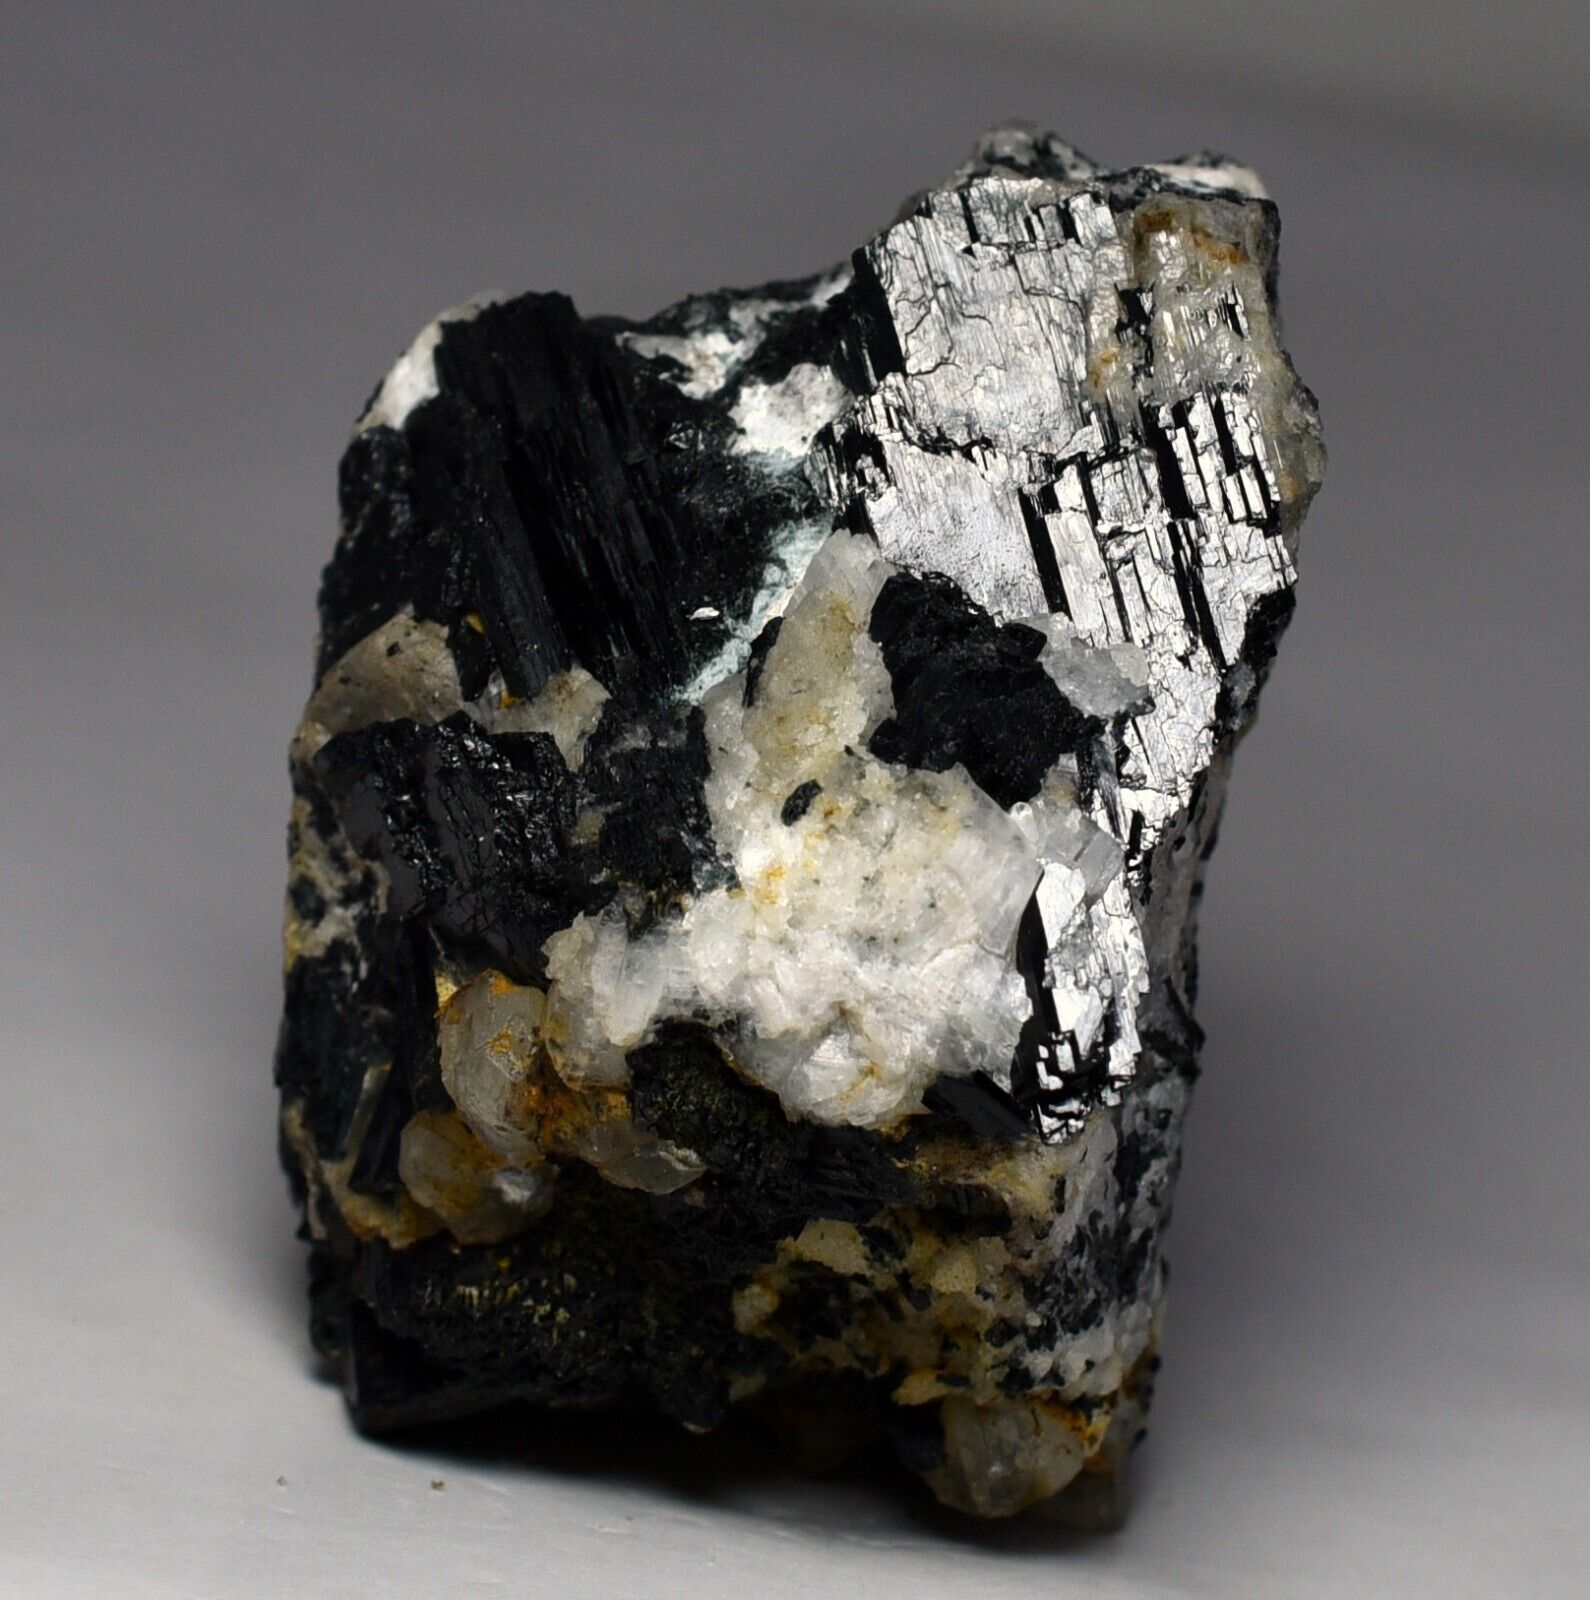 138 GM Ultra Rare Unusual Black Aegirine Crystals Cluster Minerals Specimen @Pak